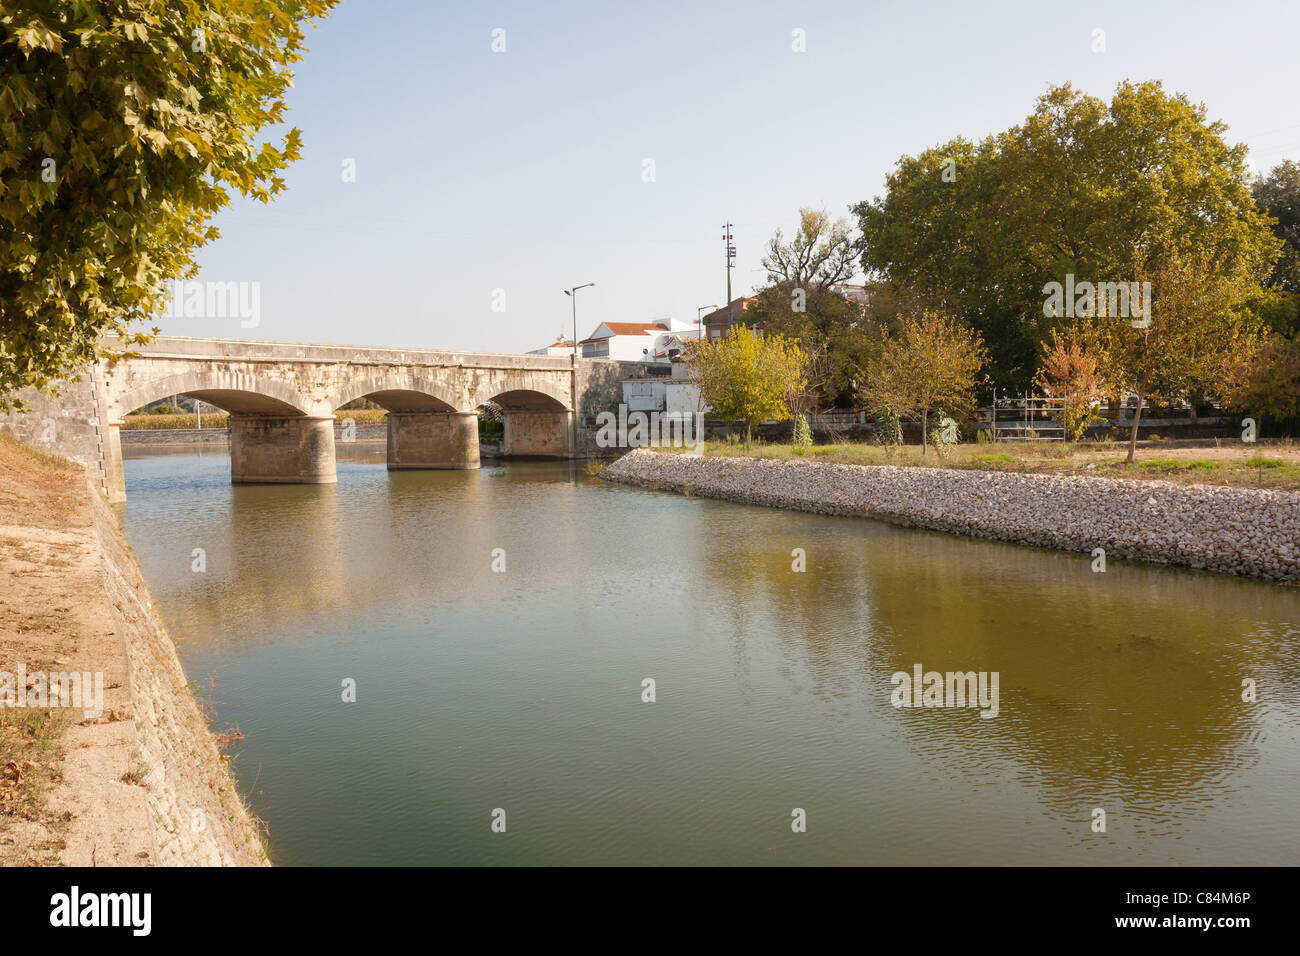 Un pont de pierre de style romain sur la rivière au portugal Banque D'Images